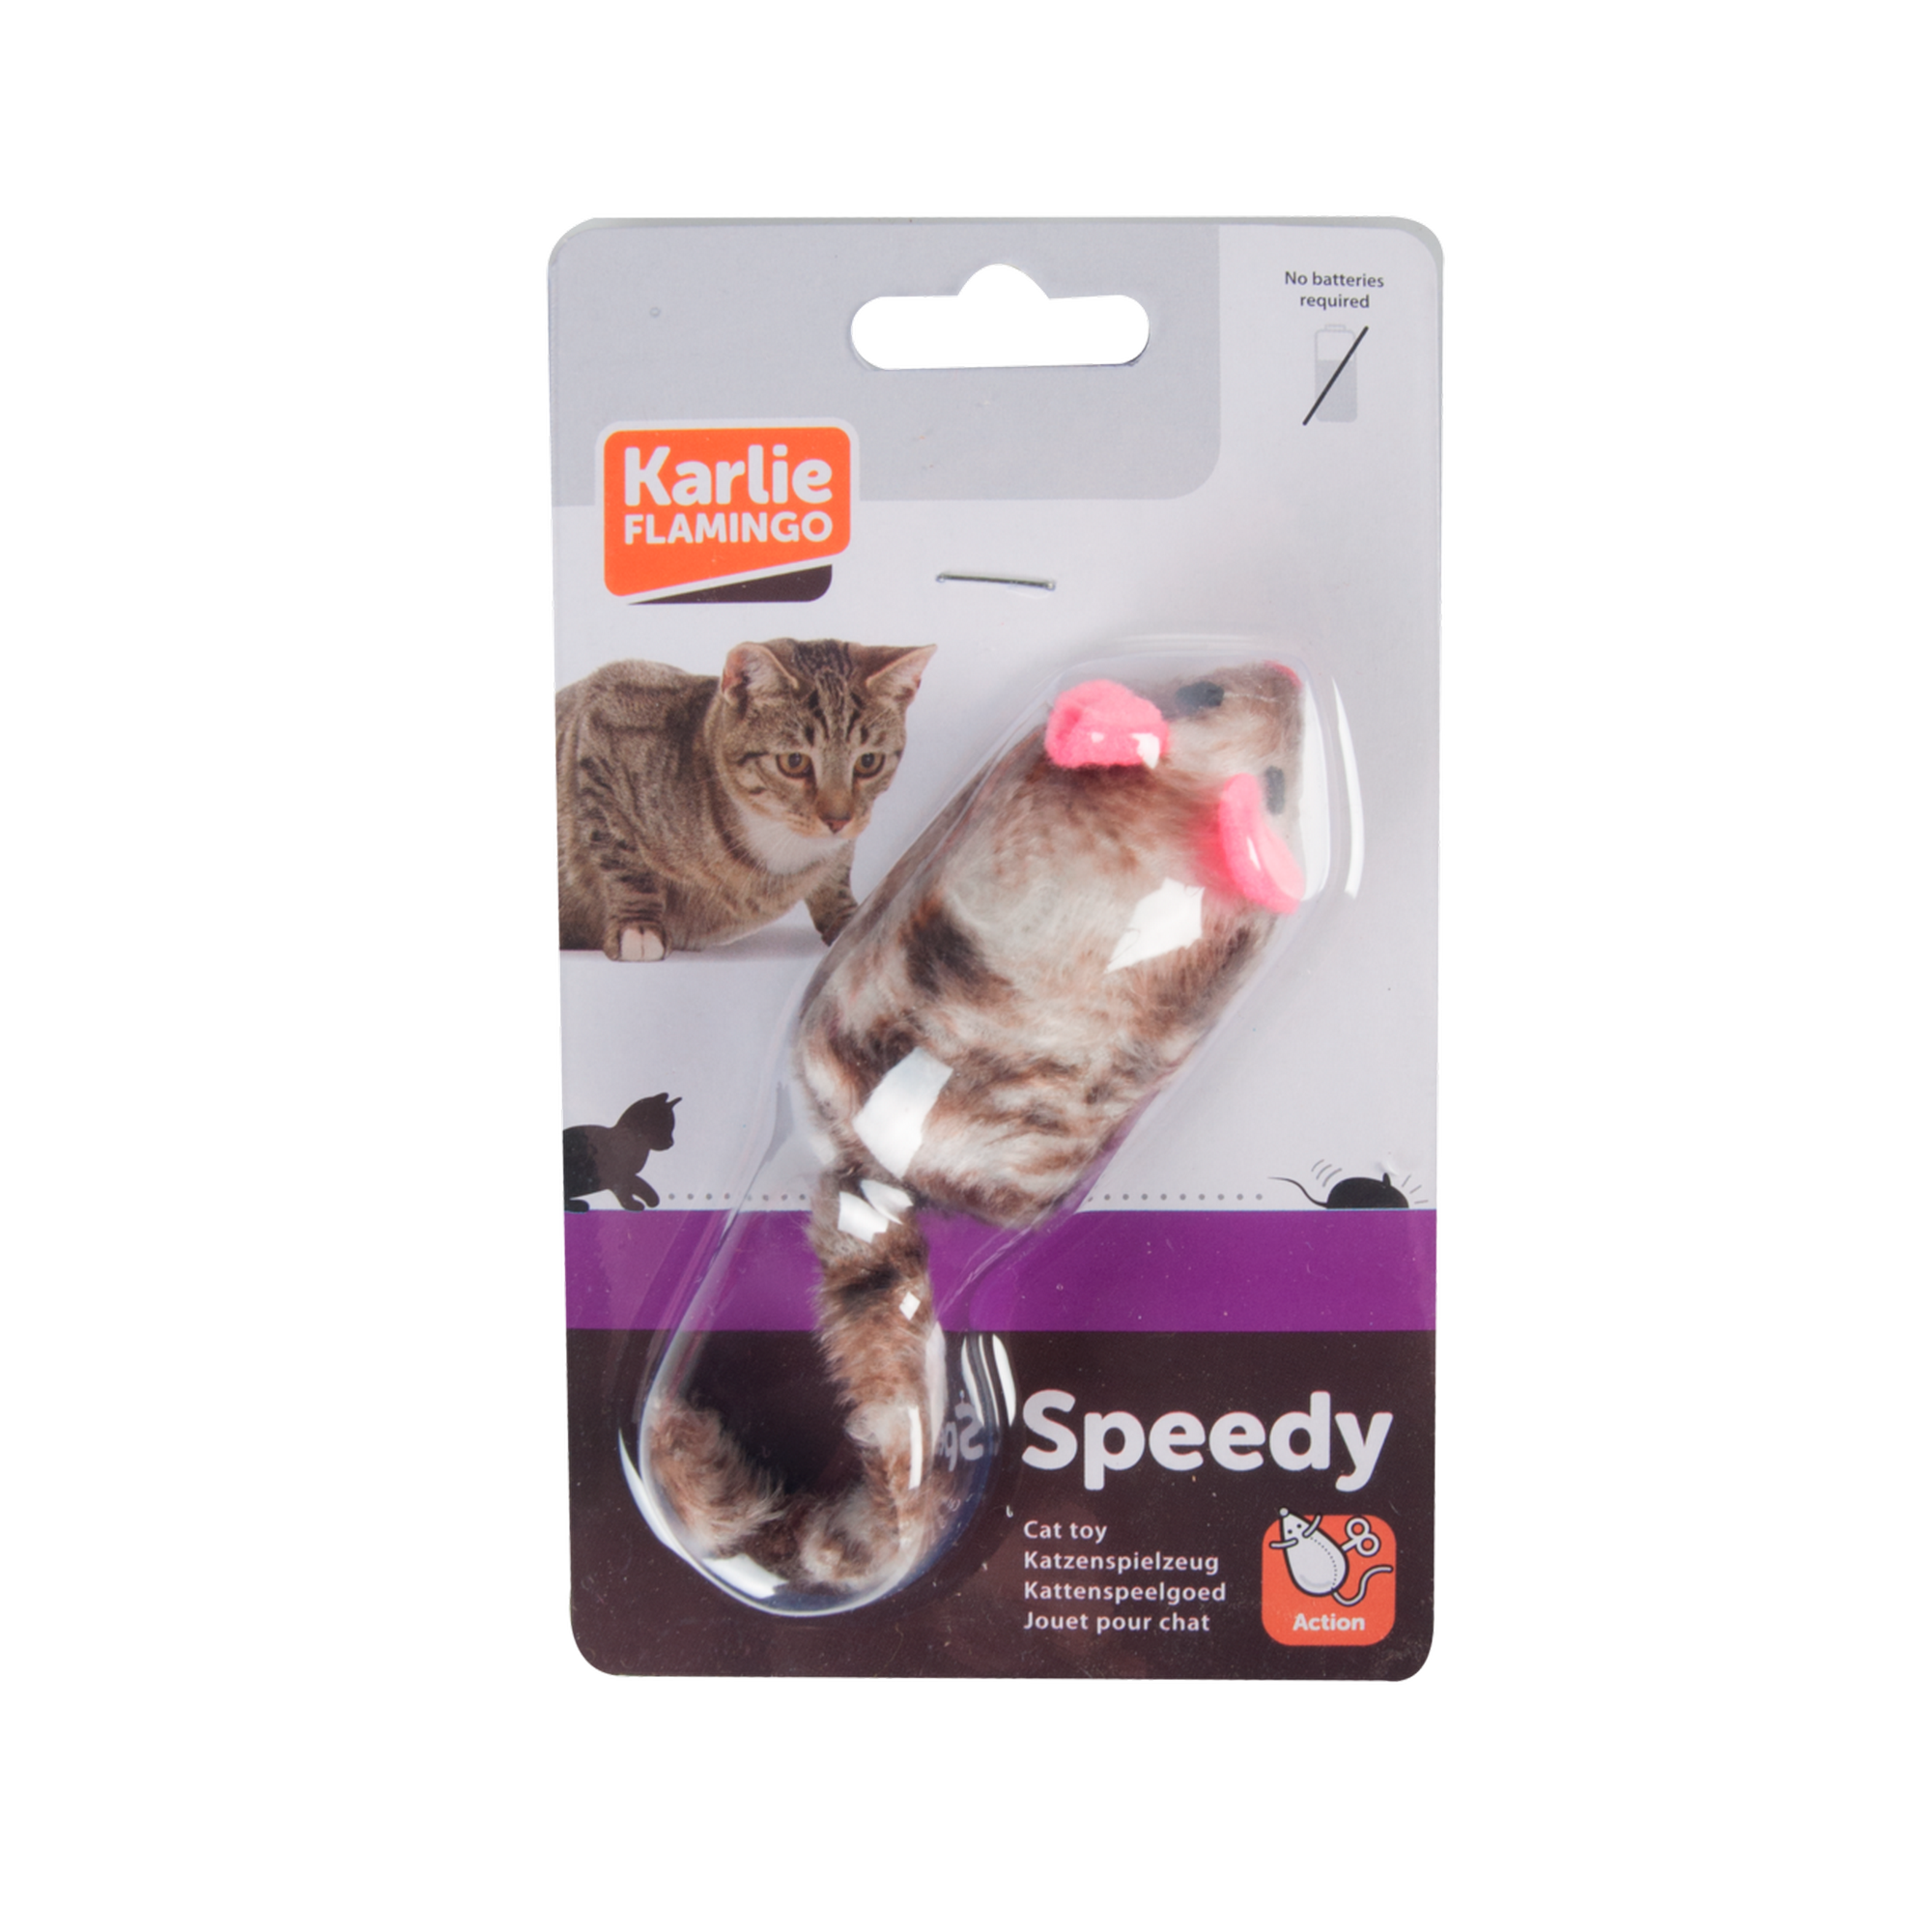 Katzenspielzeug Aufziehmaus Speedy braun/weiß + product picture